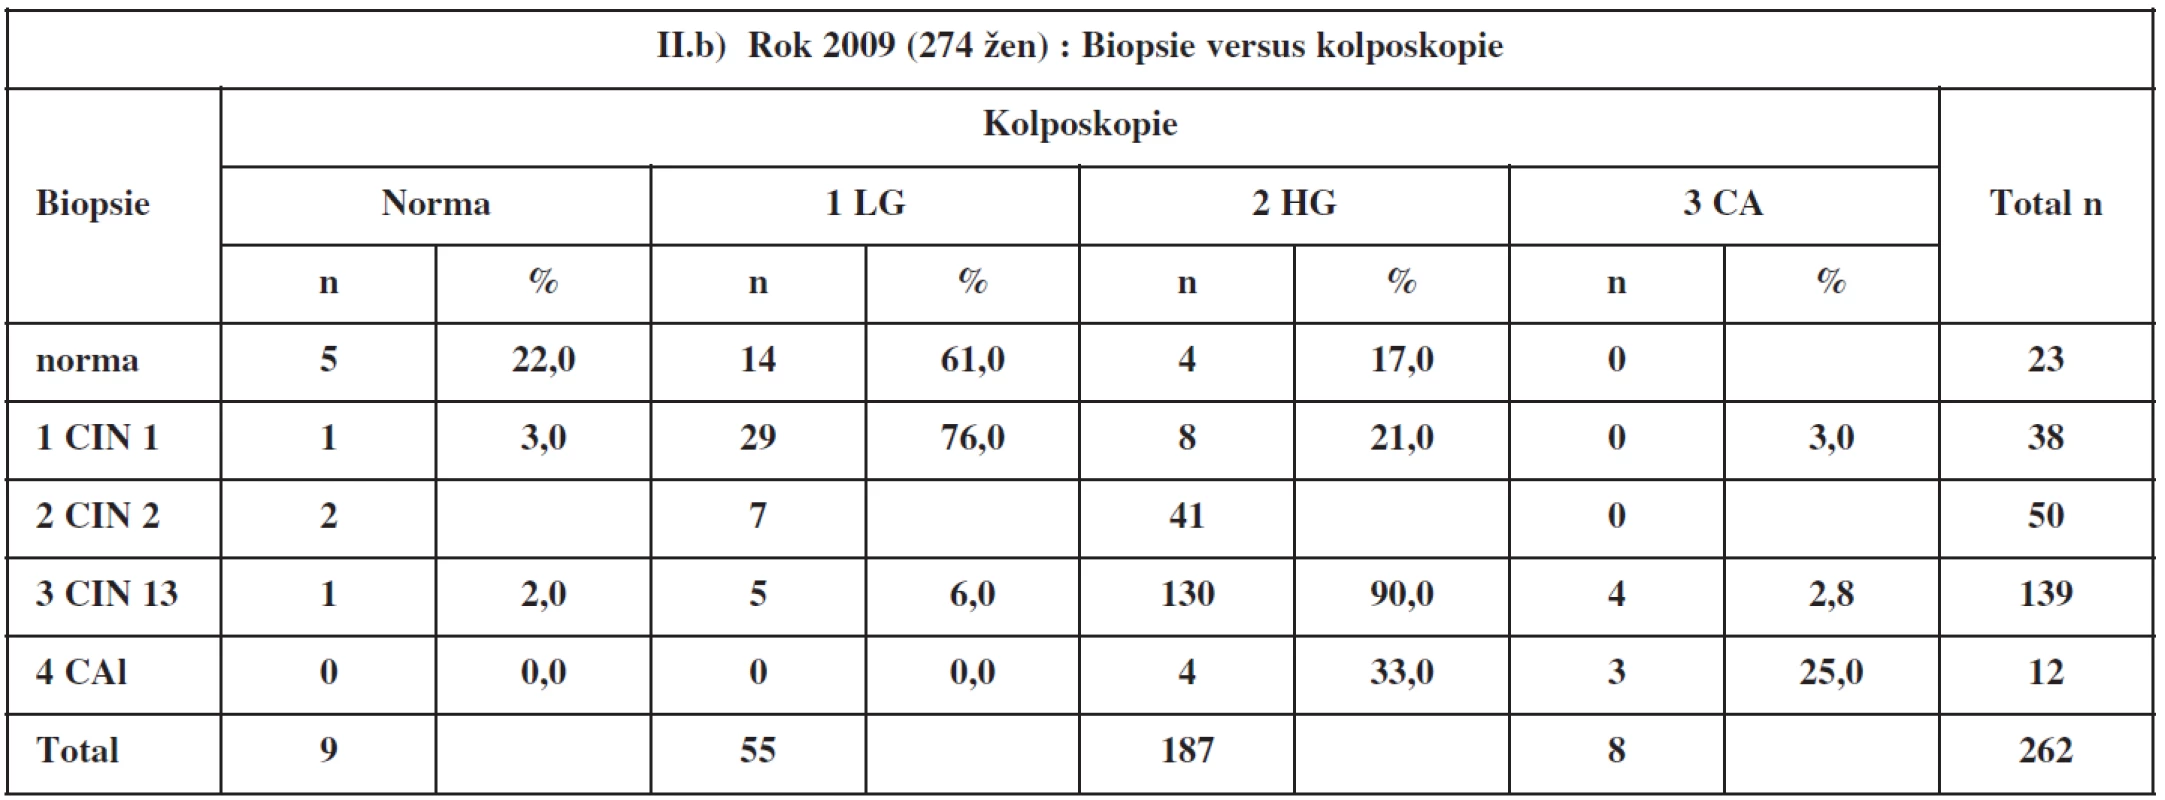 Kolposkopie a biopsie v roce 2009